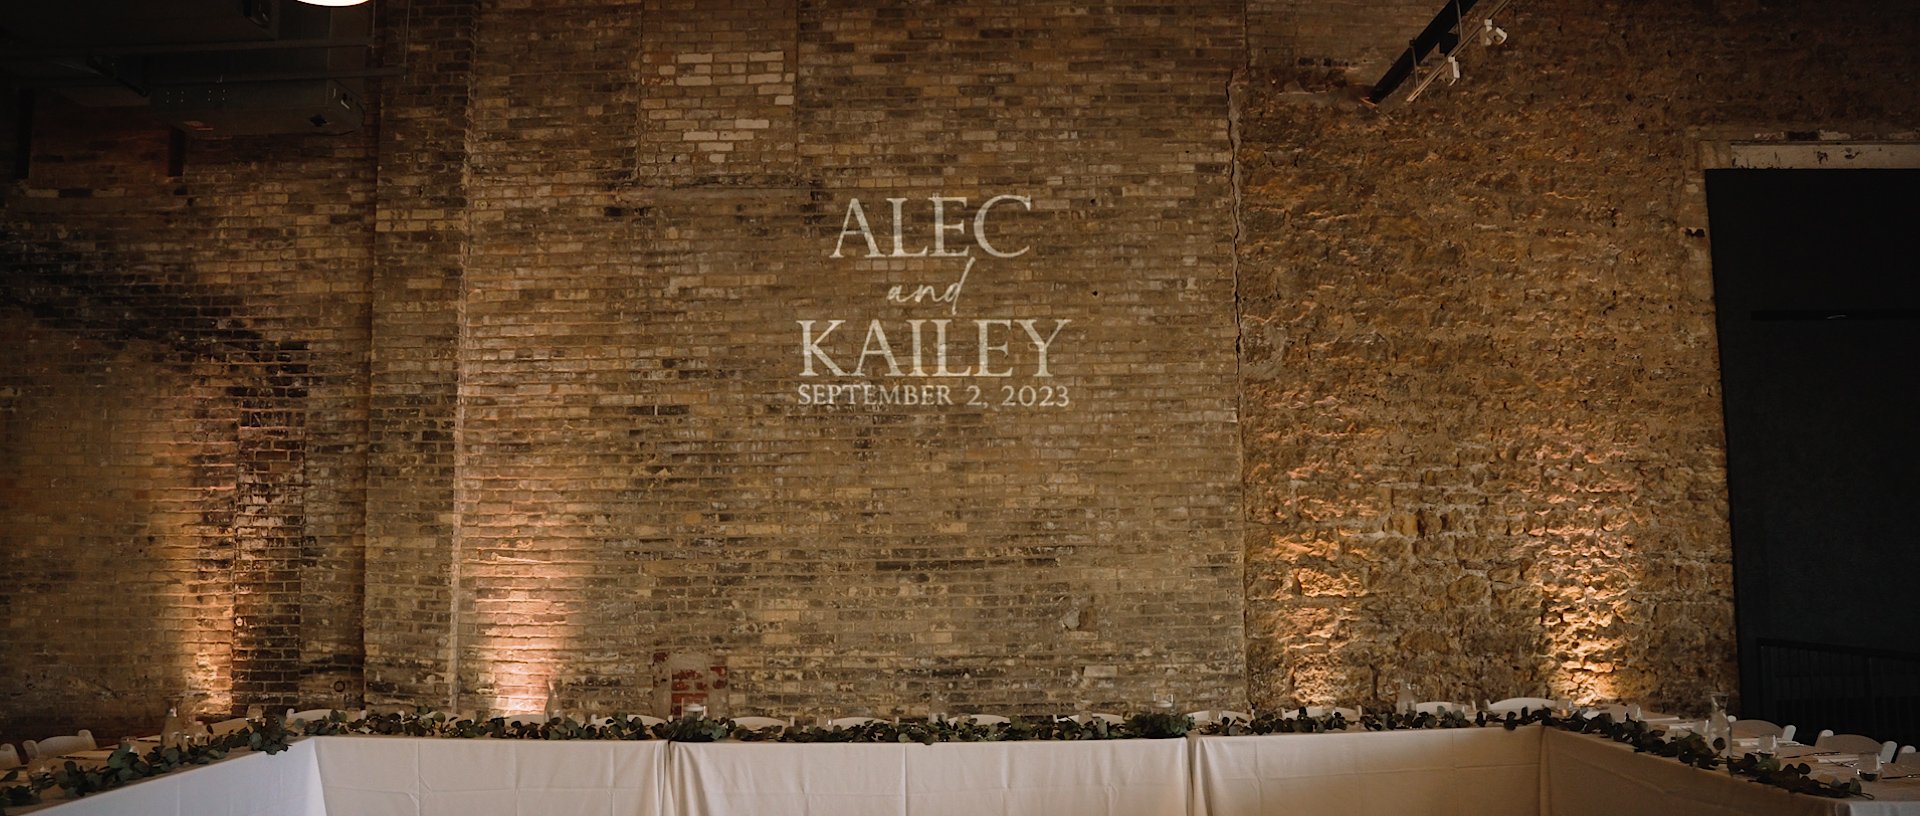 Kailey & Alec.00_02_24_08.Still012.jpg